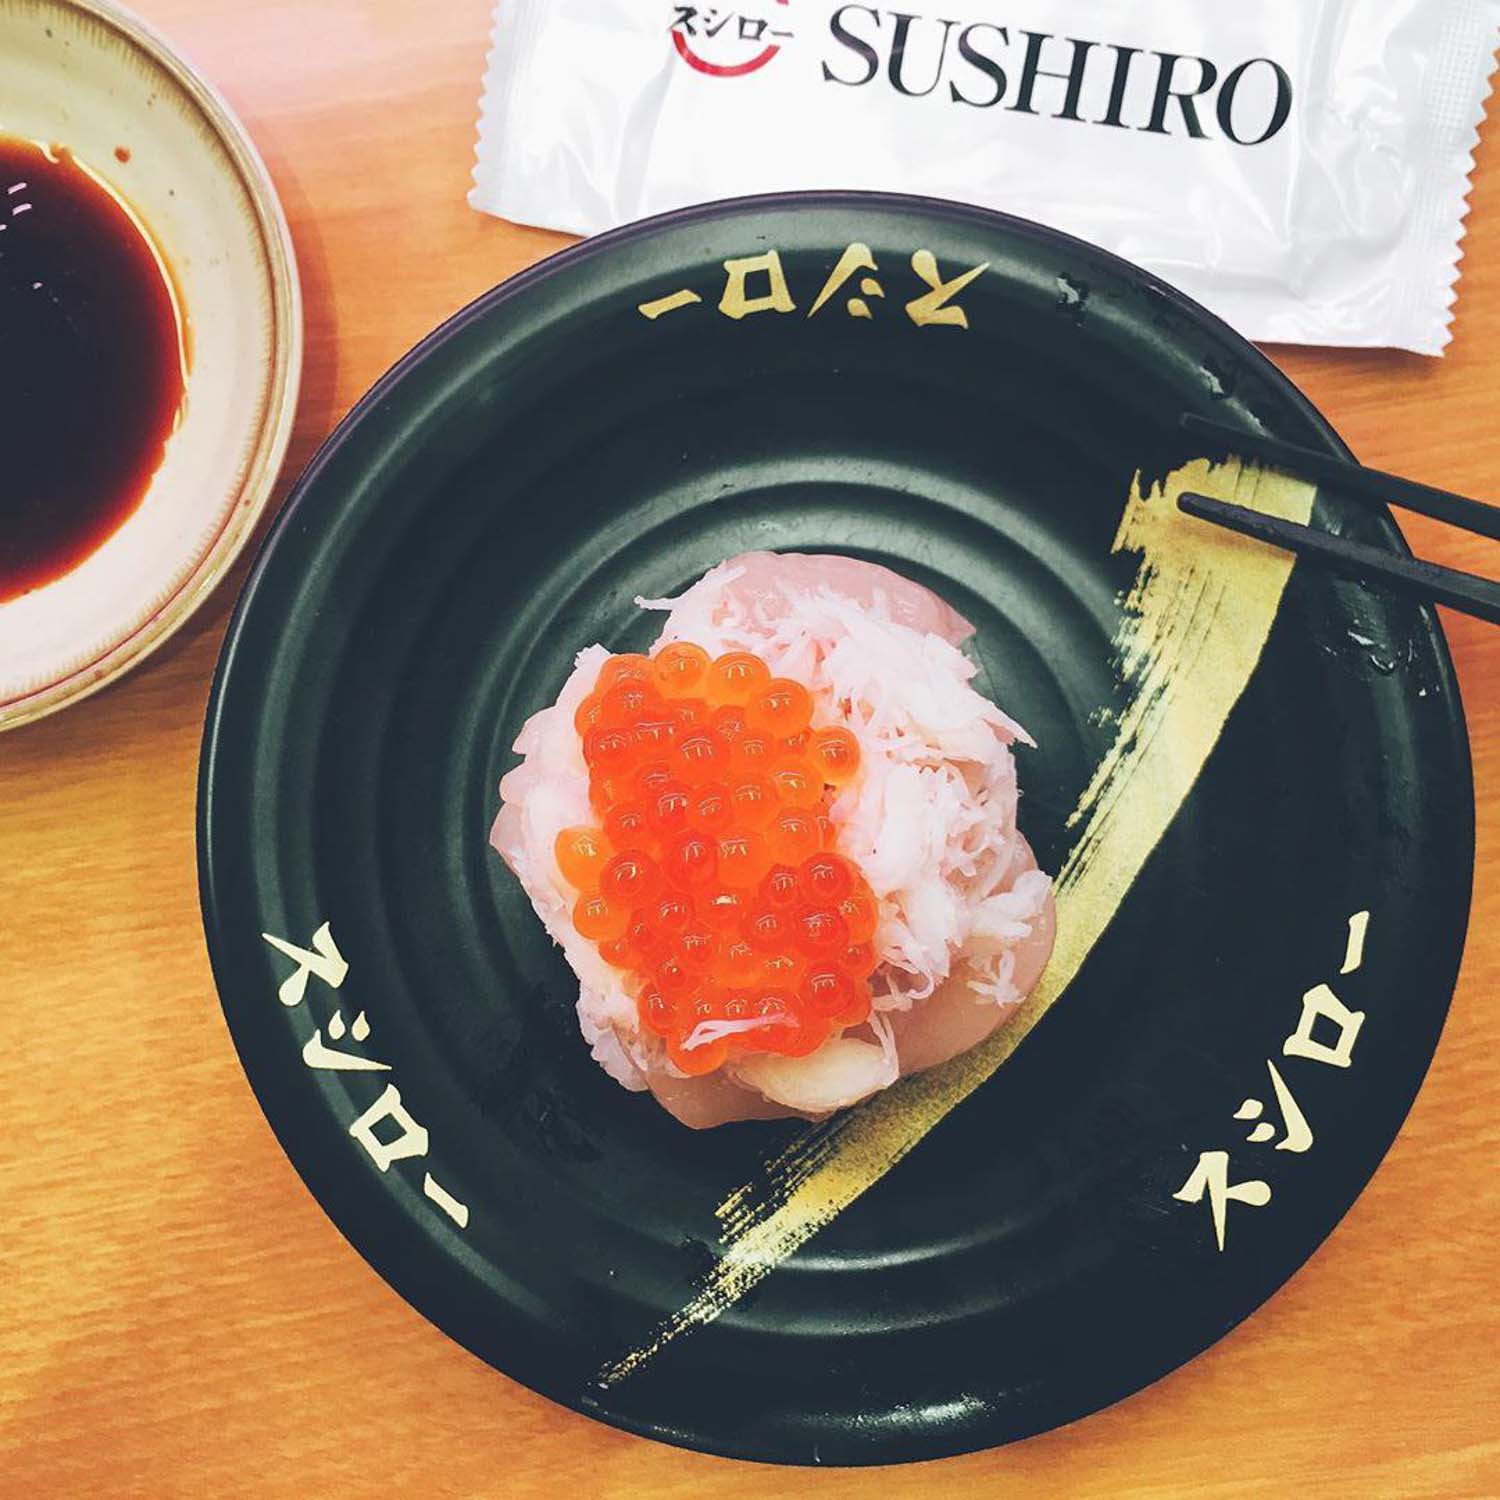 Sushiro - Sushi